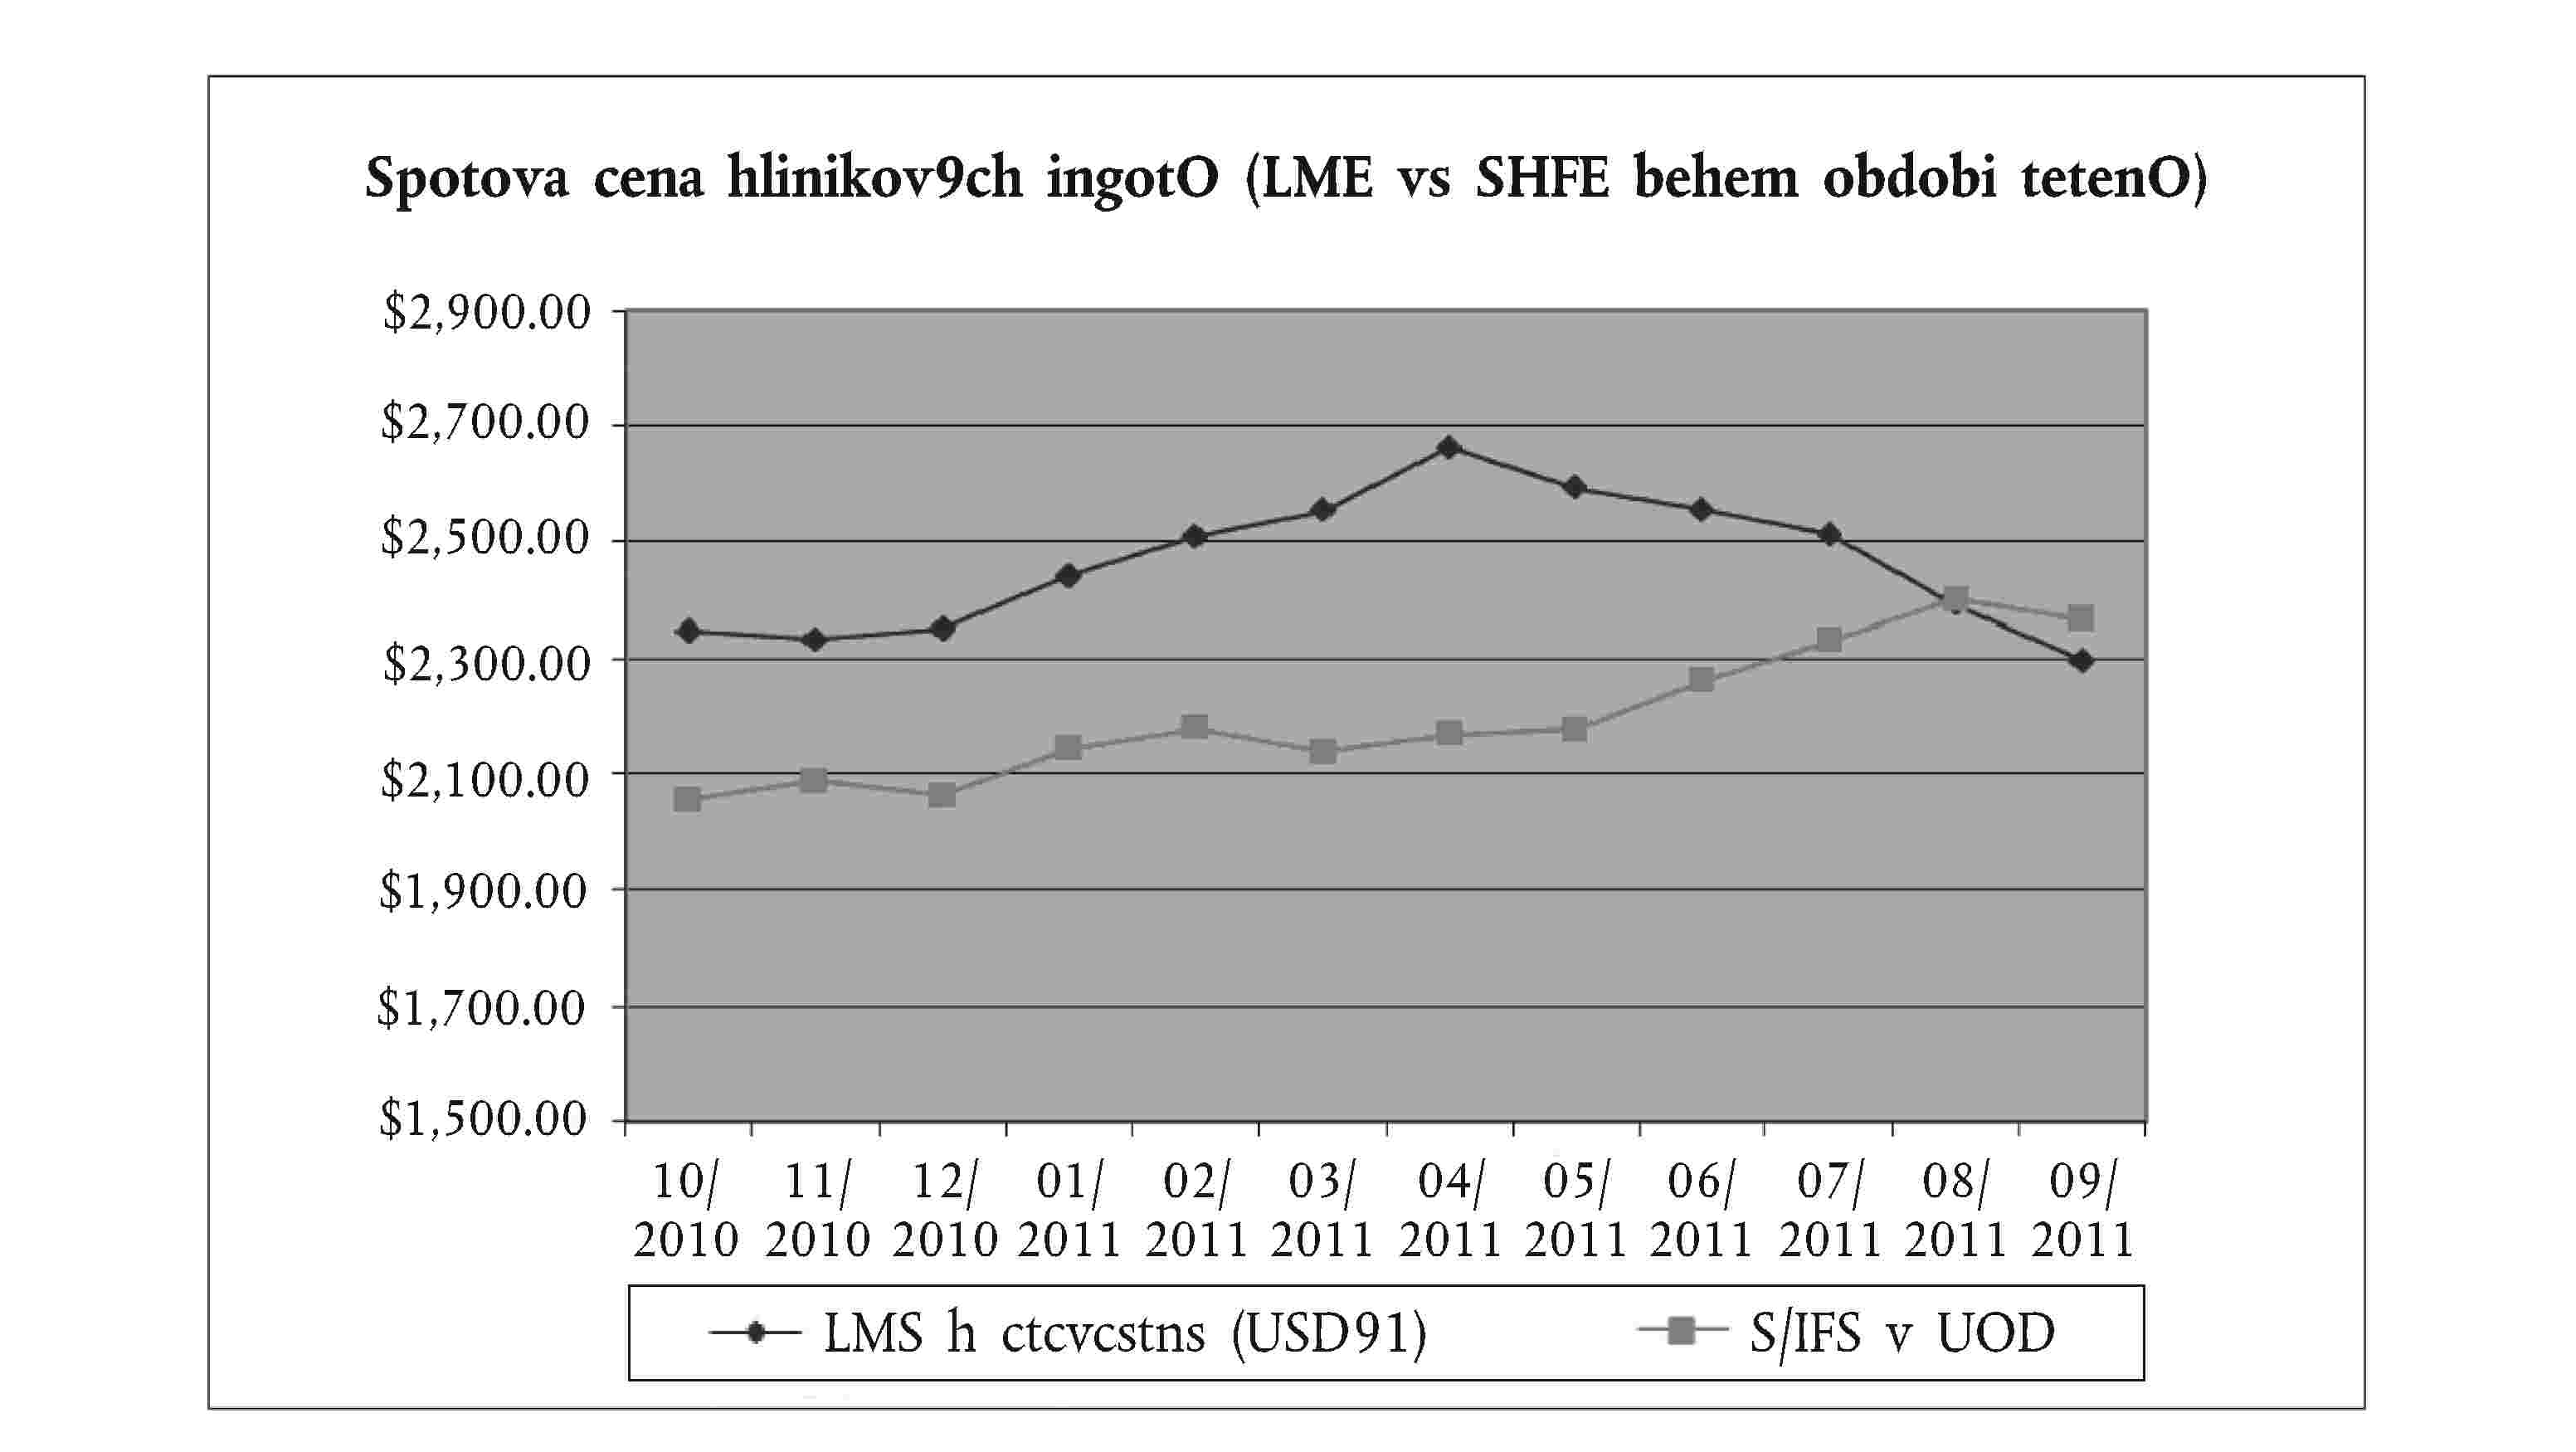 Spotova cena hlinikov9ch ingotO (LME vs SHFE behem obdobi tetenO)LMS h ctcvcstns (USD91)S/IFS v UOD